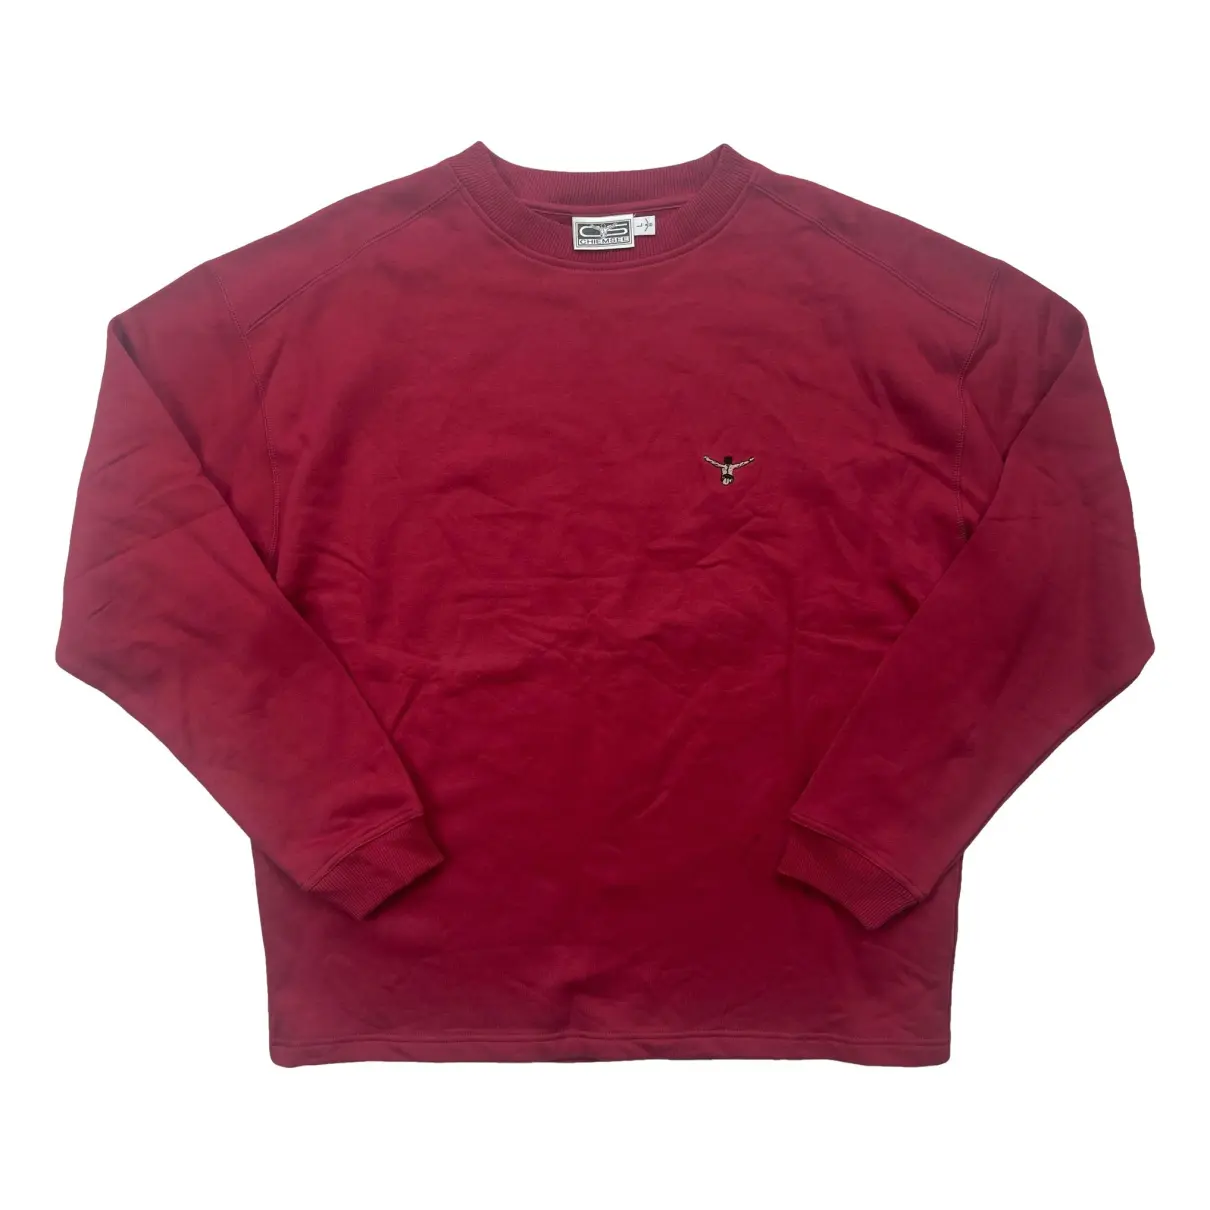 Sweatshirt Chiemsee Burgundy size L International in Cotton - 39331618